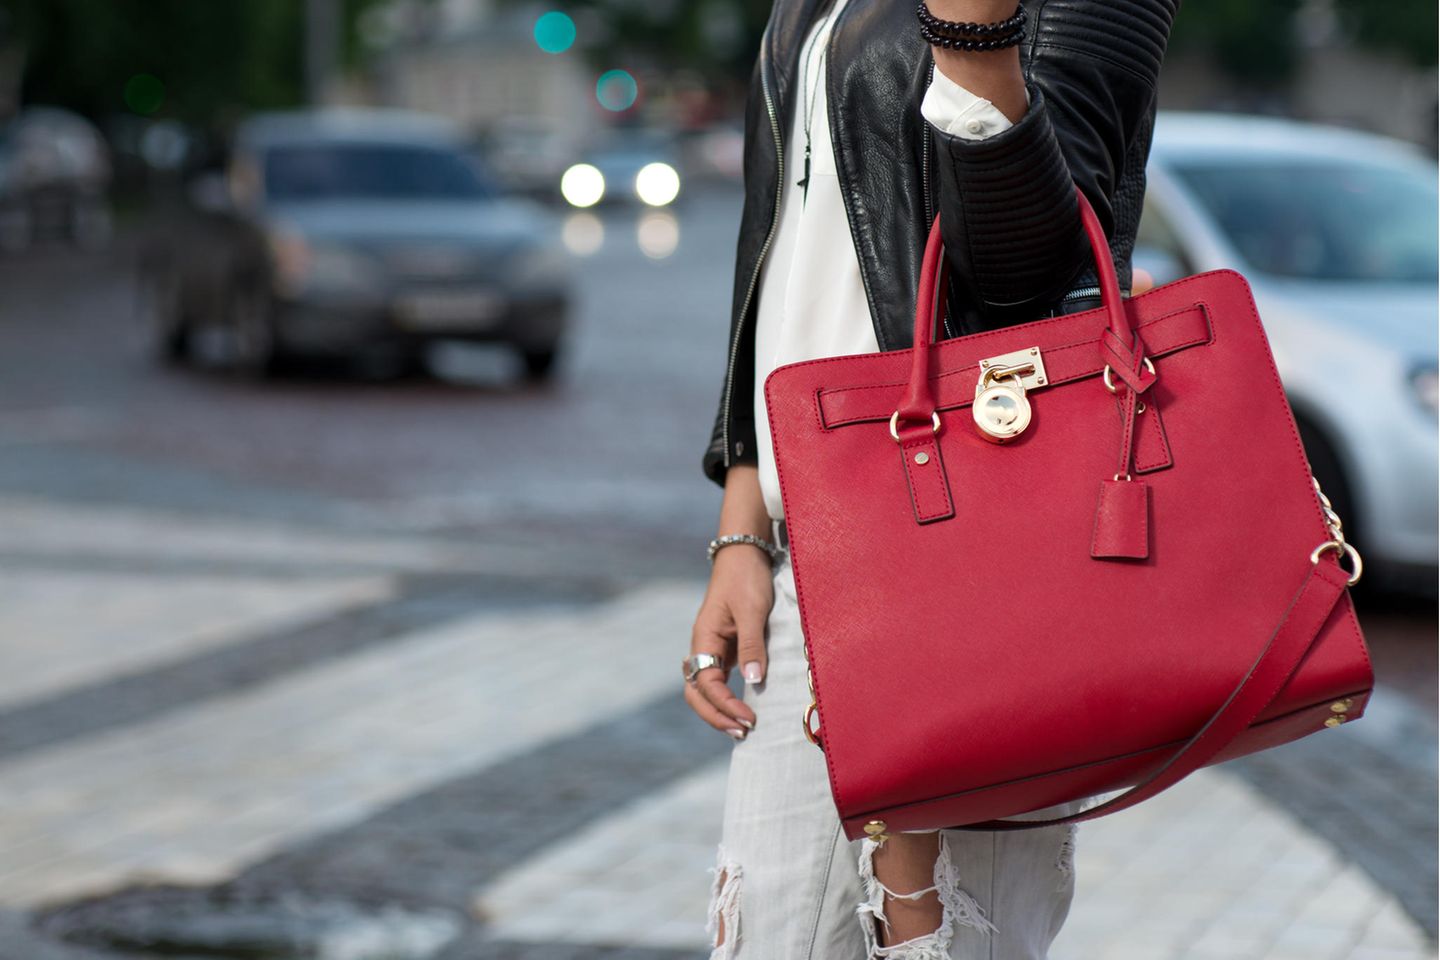 Wie Sie Ihre Handtasche tragen, verrät einiges über Ihren Charakter: Frau trägt rote Tasche